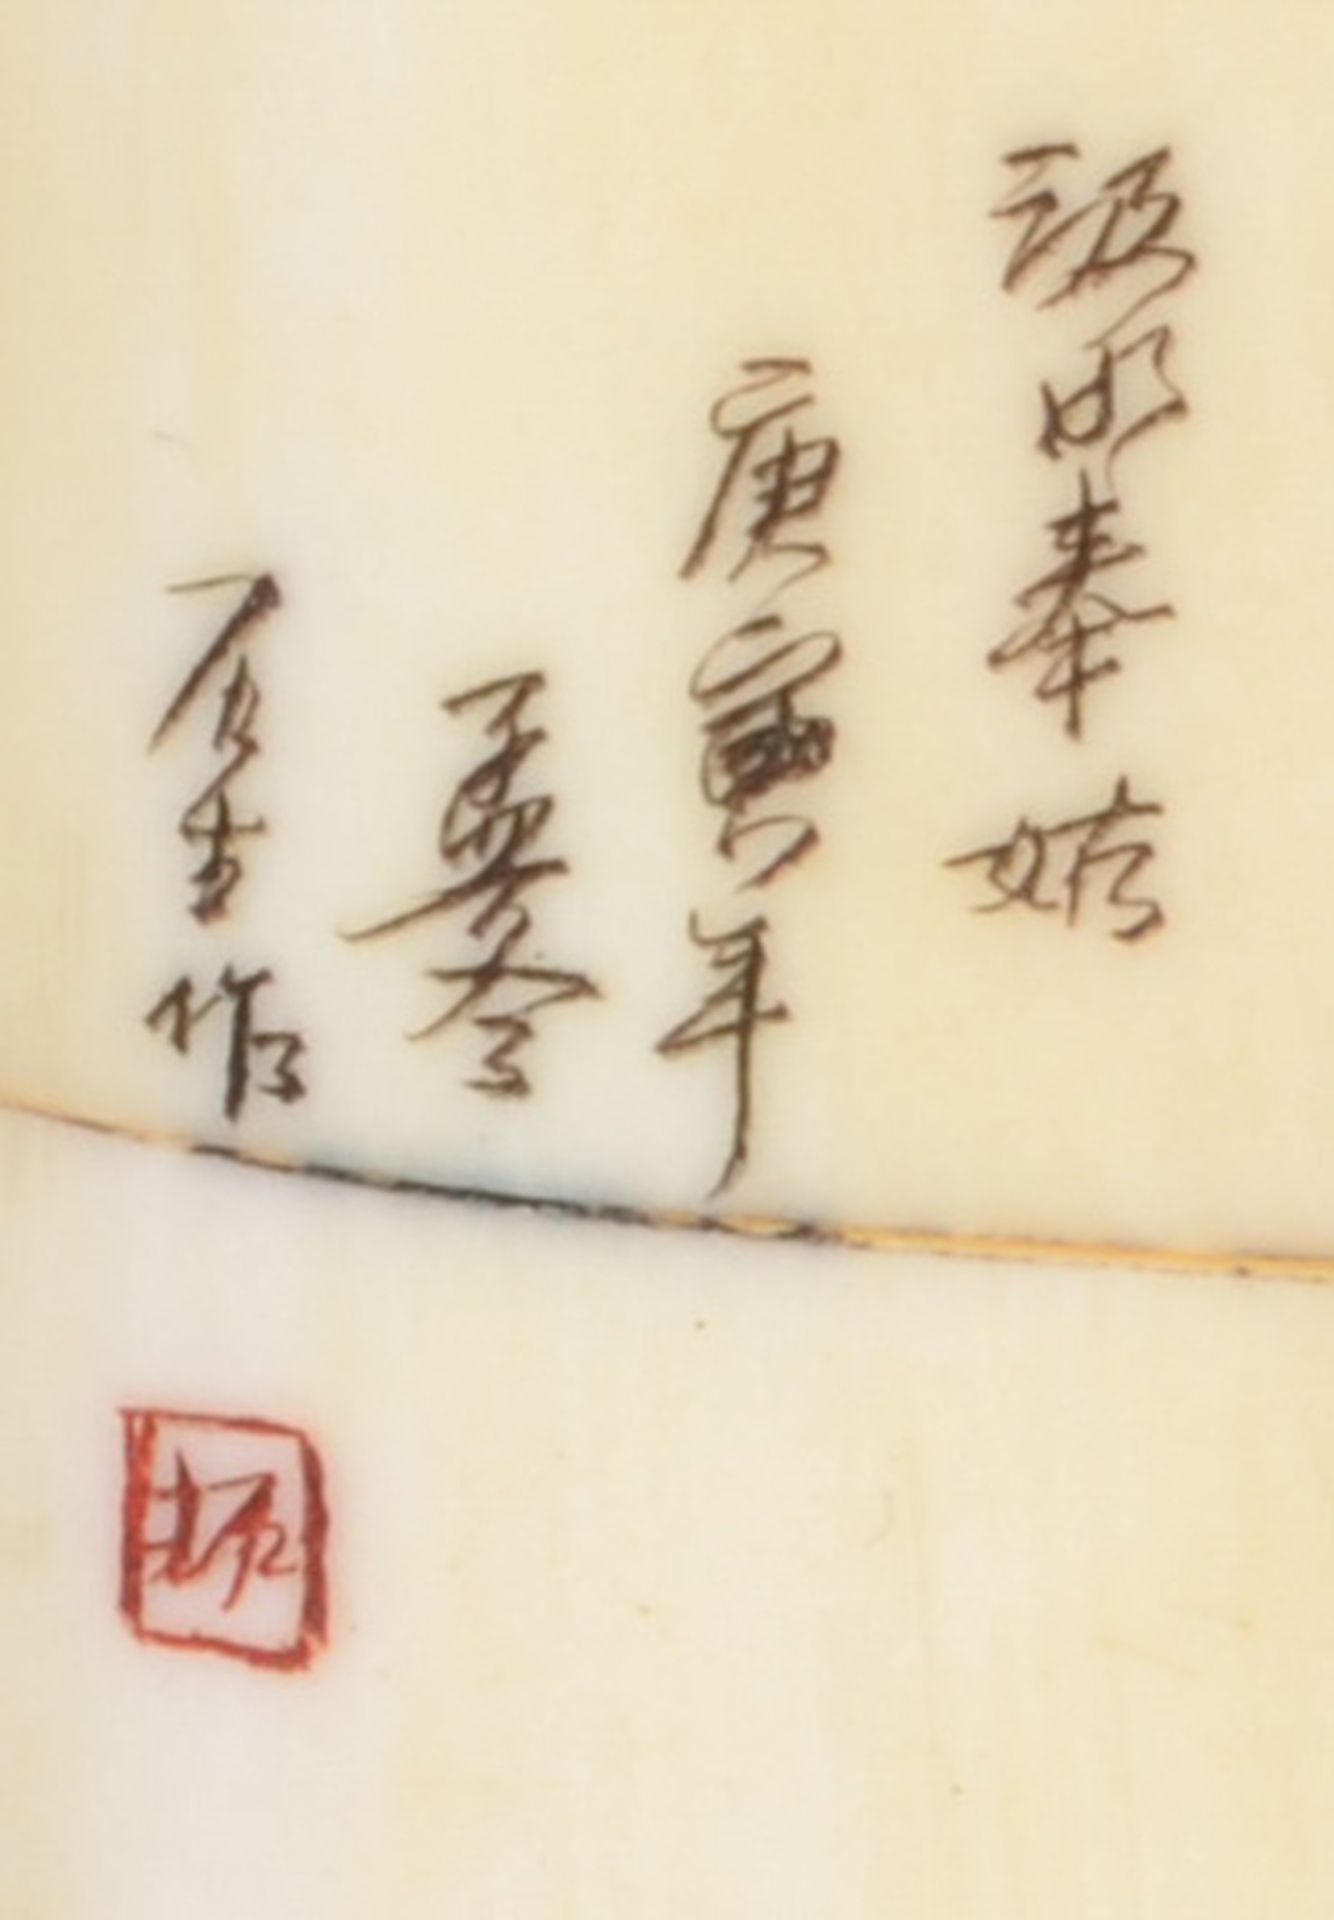 19-tlgs. Konvolut Asiatika, bestehend aus: Inros, Netsuke, Siegel und Wappen u.a. aus Jade, Horn, - Image 2 of 11